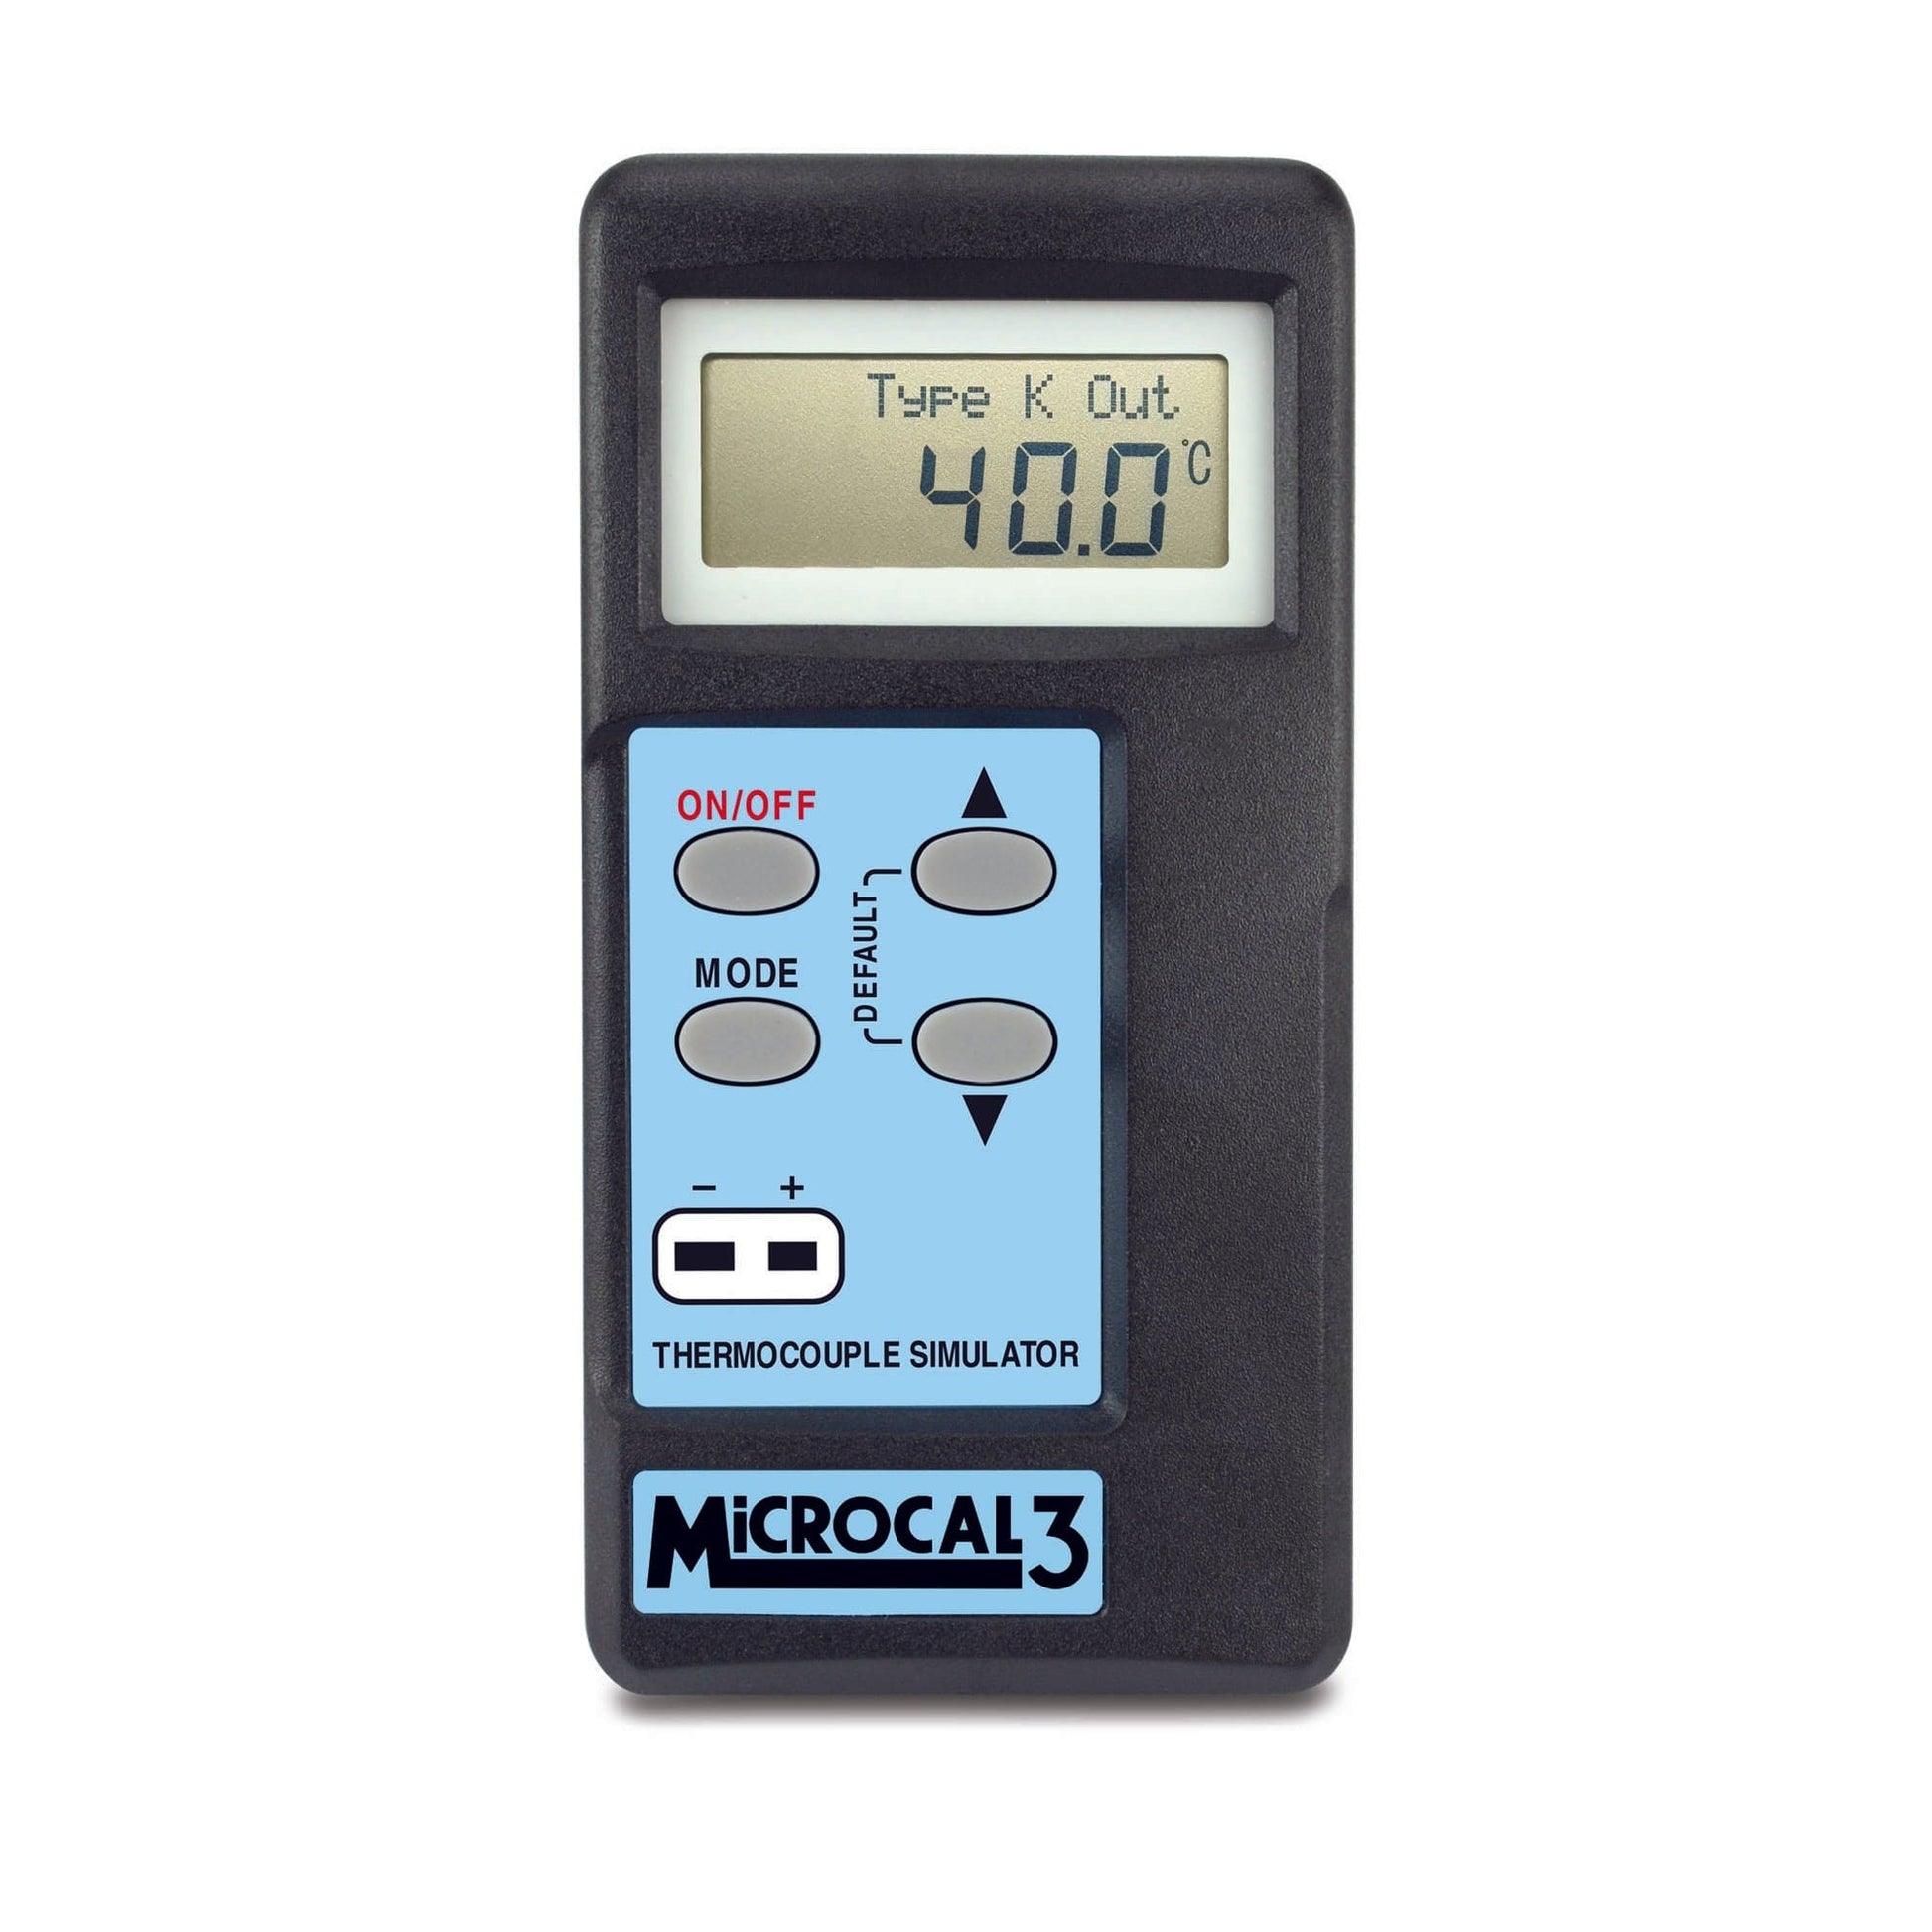 Un Thermomètre simulateur MicroCal 3 de Thermometre.fr sur fond blanc.